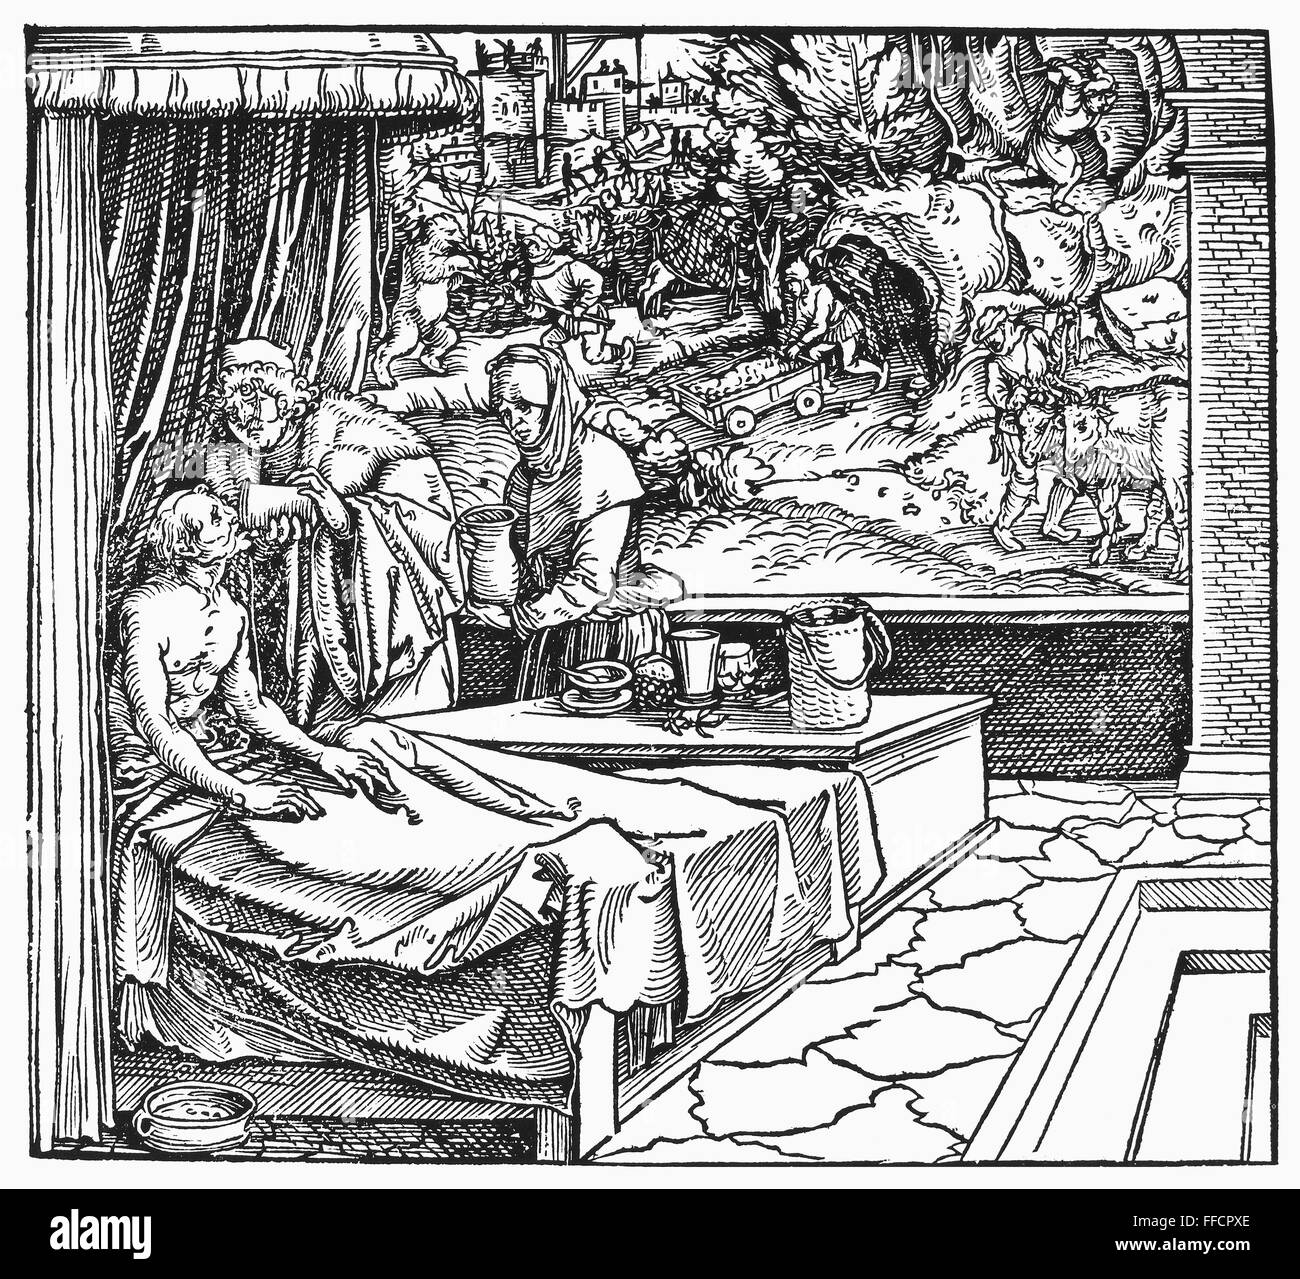 ARZT UND PATIENT, 1531. NUM Arzt einem Patienten Ministereing. Holzschnitt, 1531, von Hans Weiditz. Stockfoto